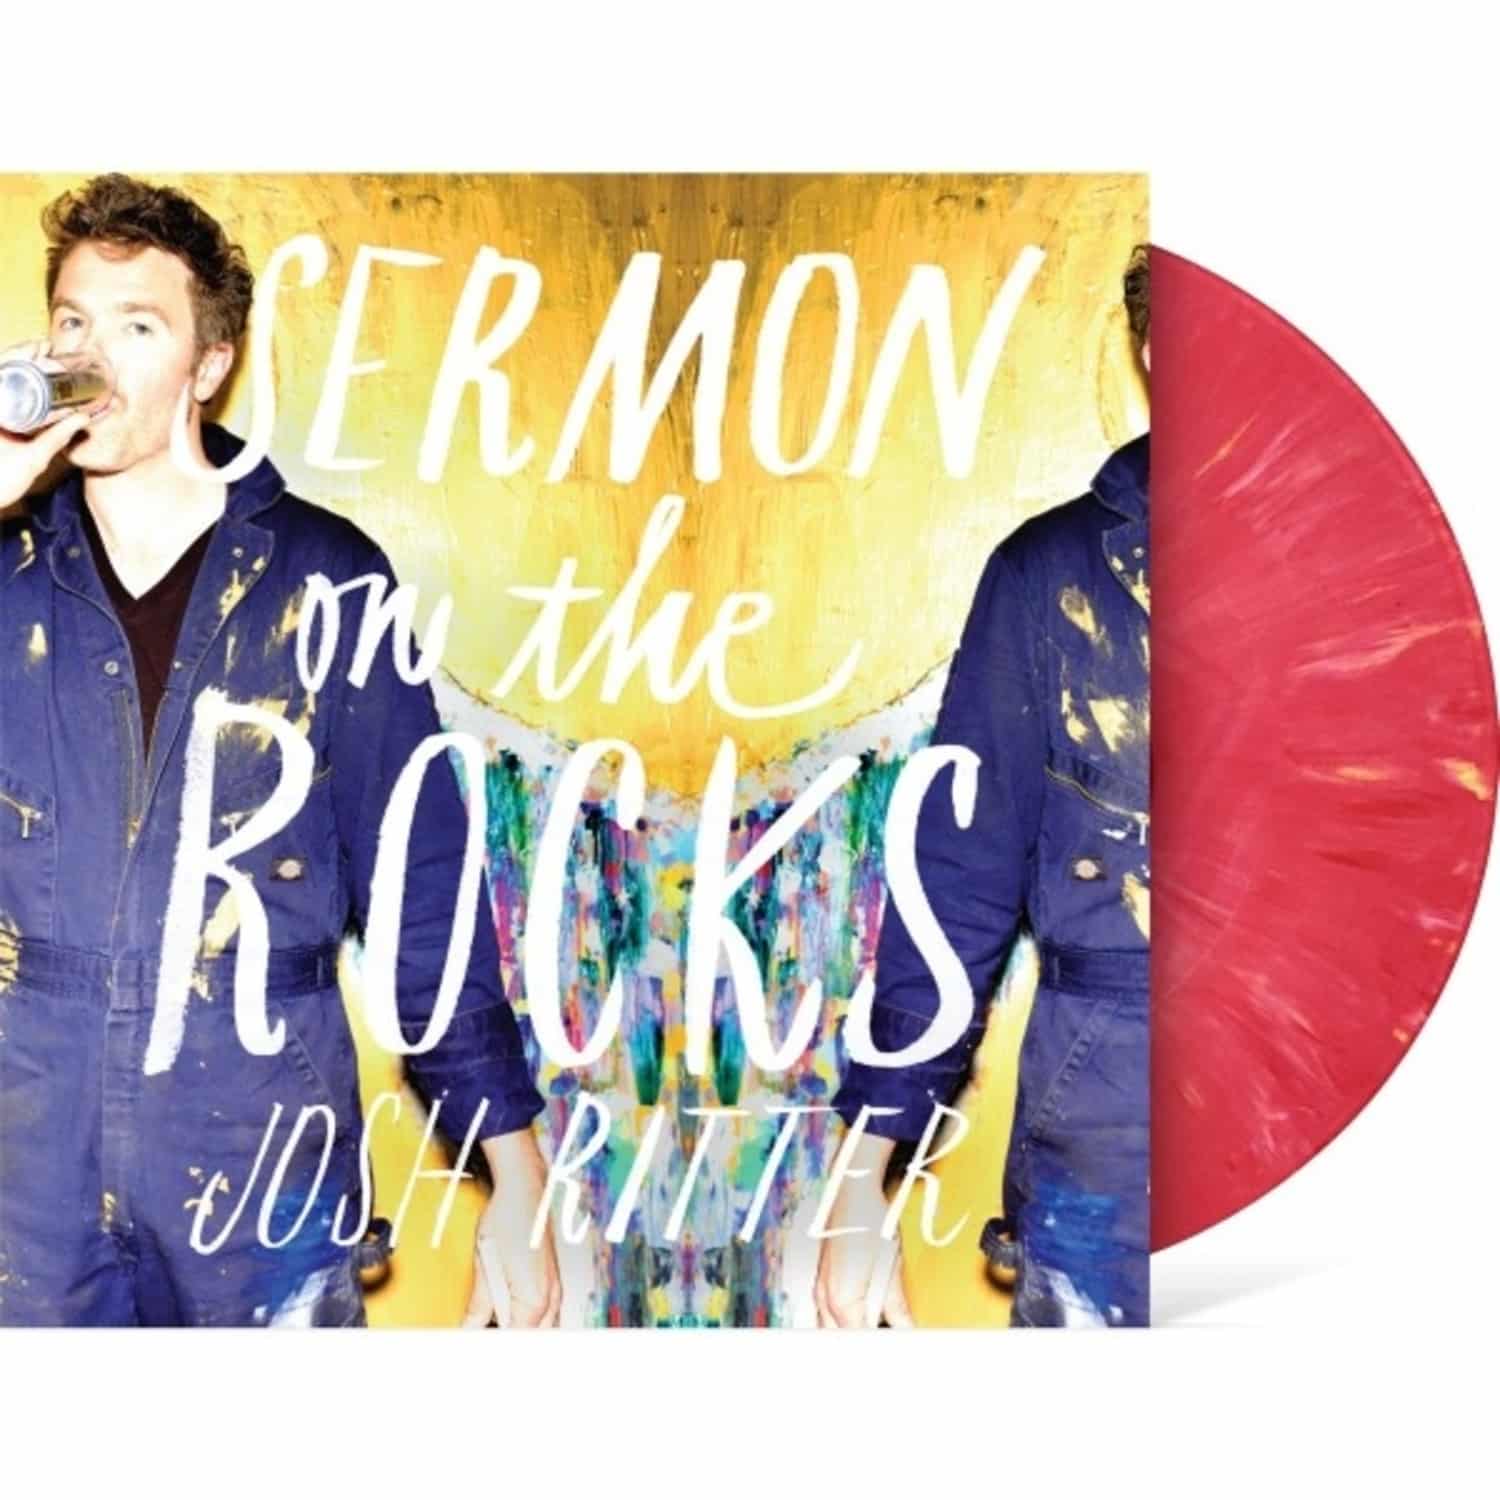 Josh Ritter - SERMON ON THE ROCKS - SALMON LP 